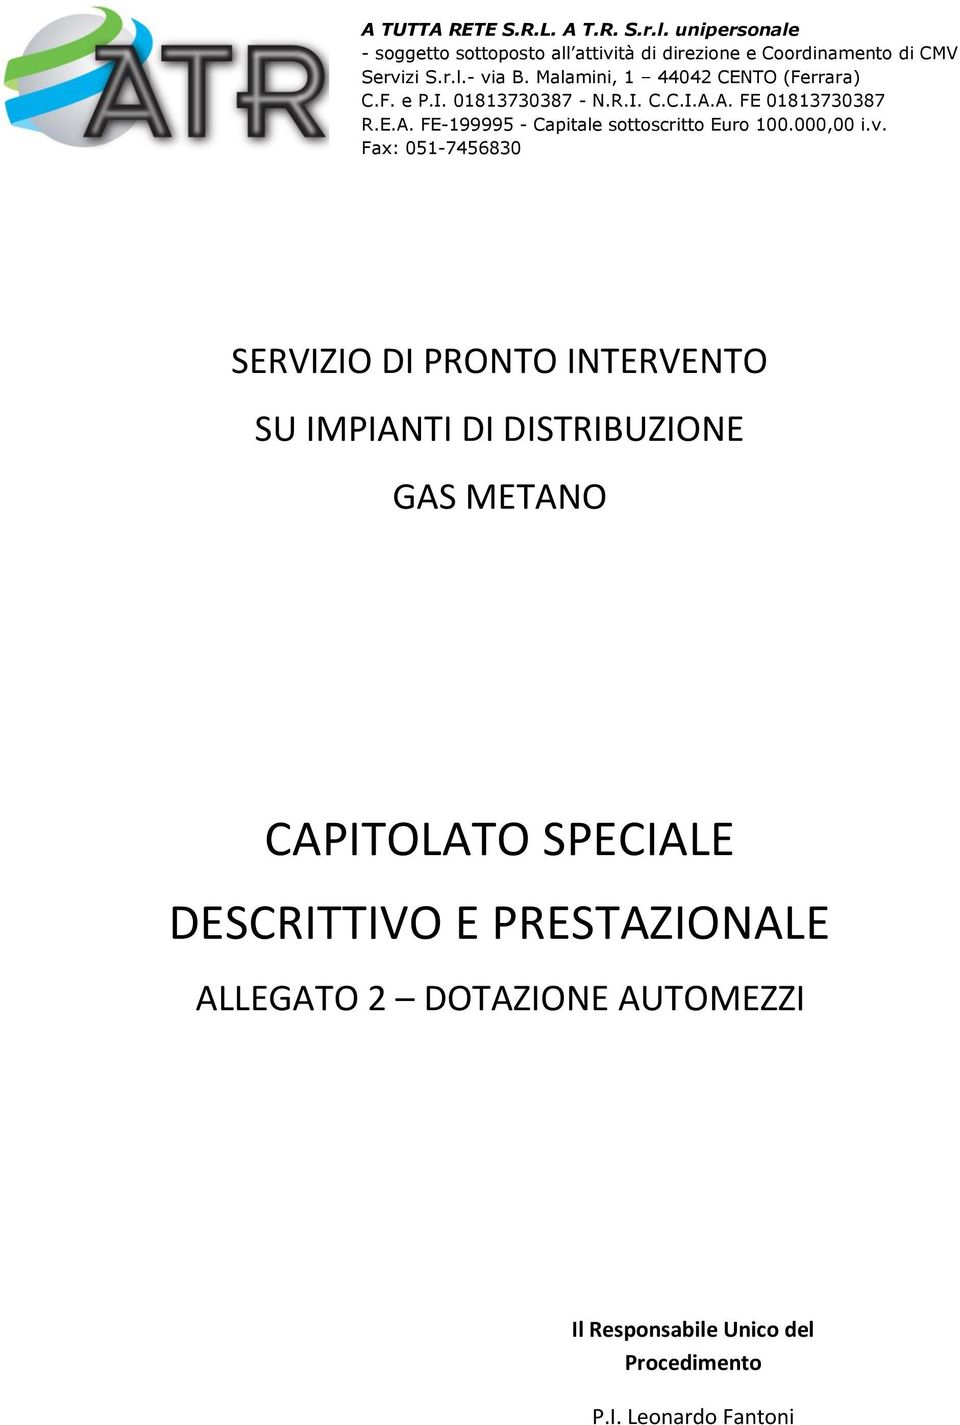 Malamini, 1 44042 CENTO (Ferrara) C.F. e P.I. 01813730387 - N.R.I. C.C.I.A.A. FE 01813730387 R.E.A. FE-199995 - Capitale sottoscritto Euro 100.